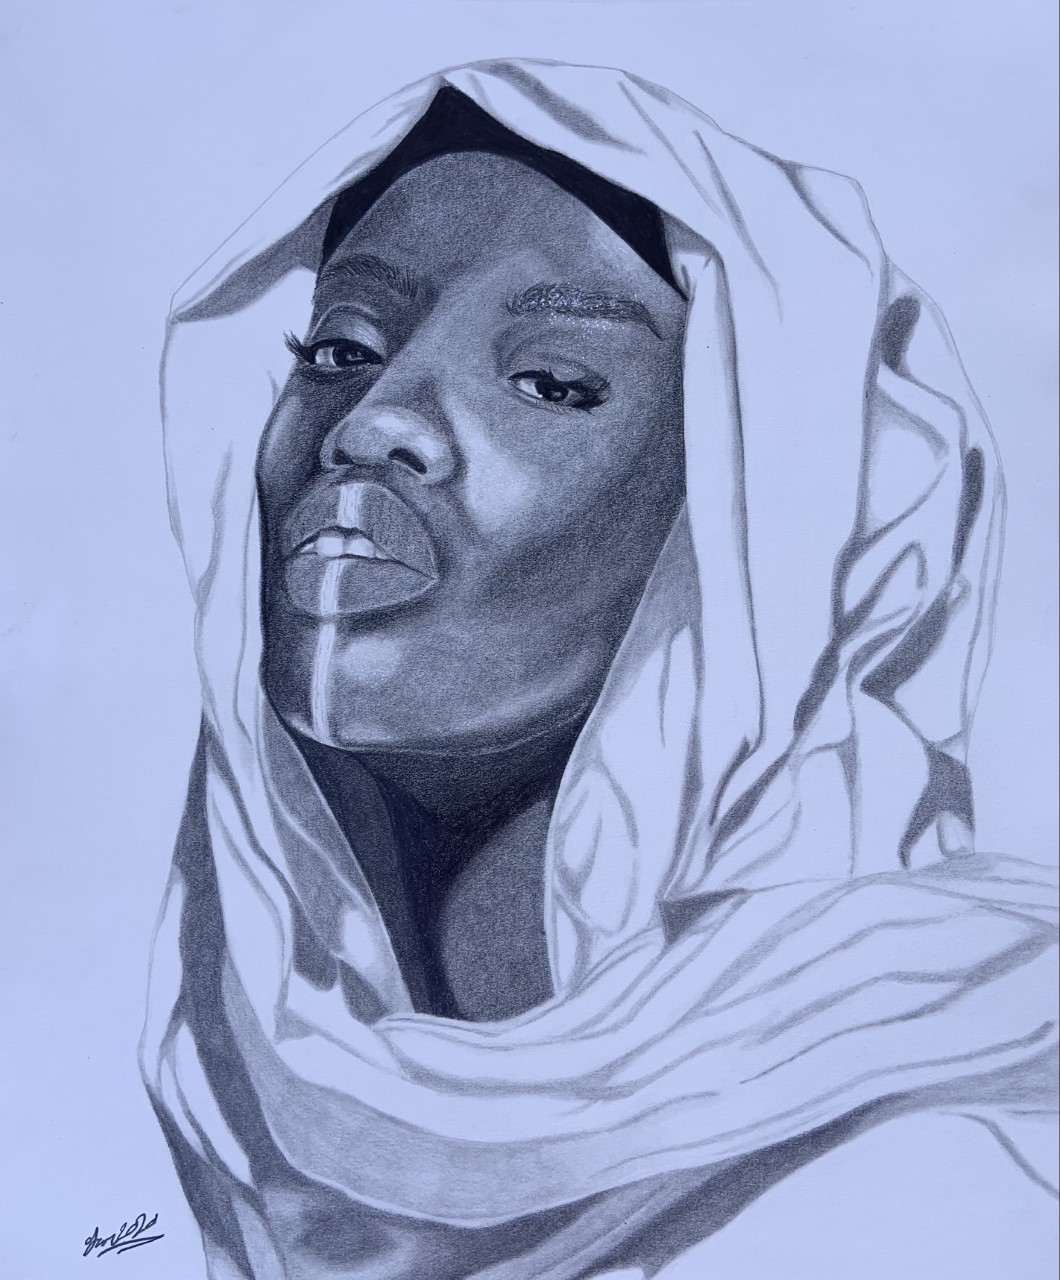 Portrait done in graphite